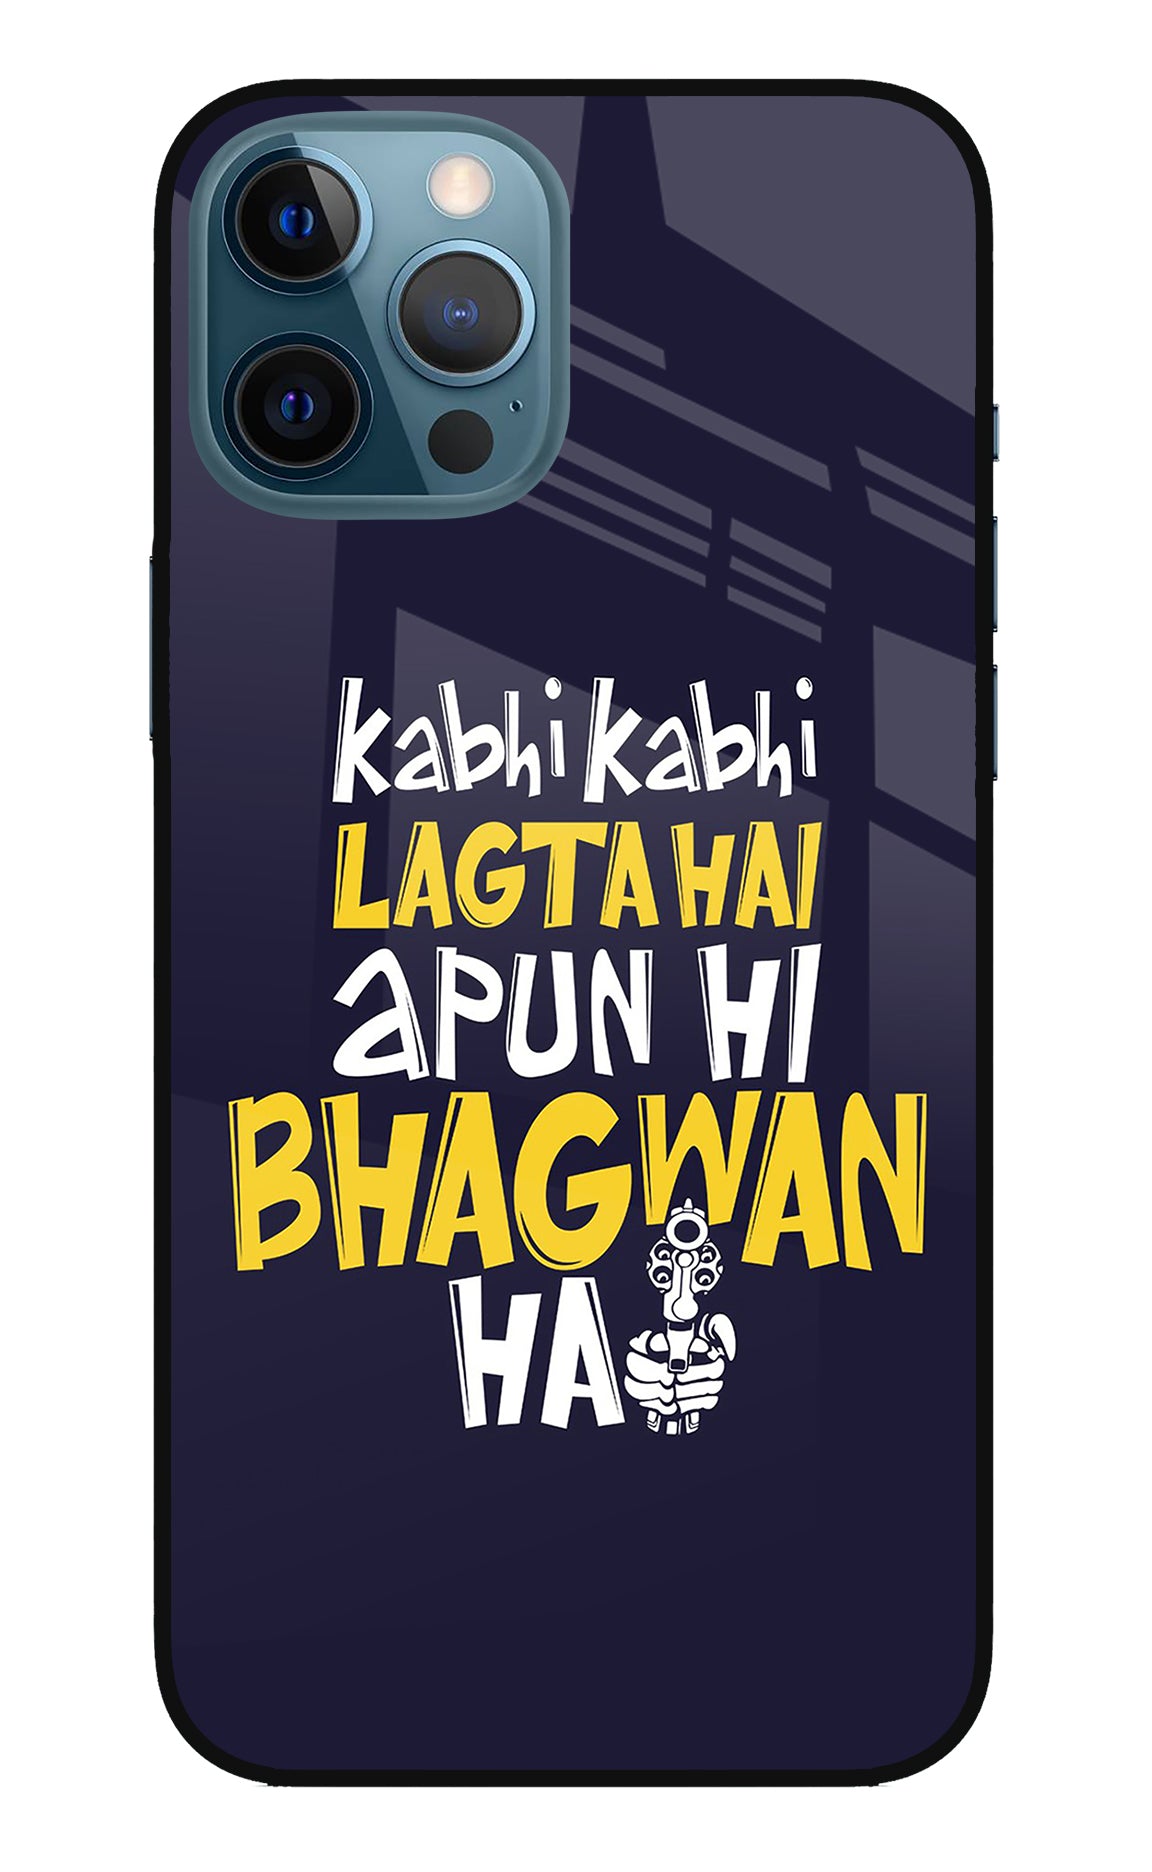 Kabhi Kabhi Lagta Hai Apun Hi Bhagwan Hai iPhone 12 Pro Max Back Cover